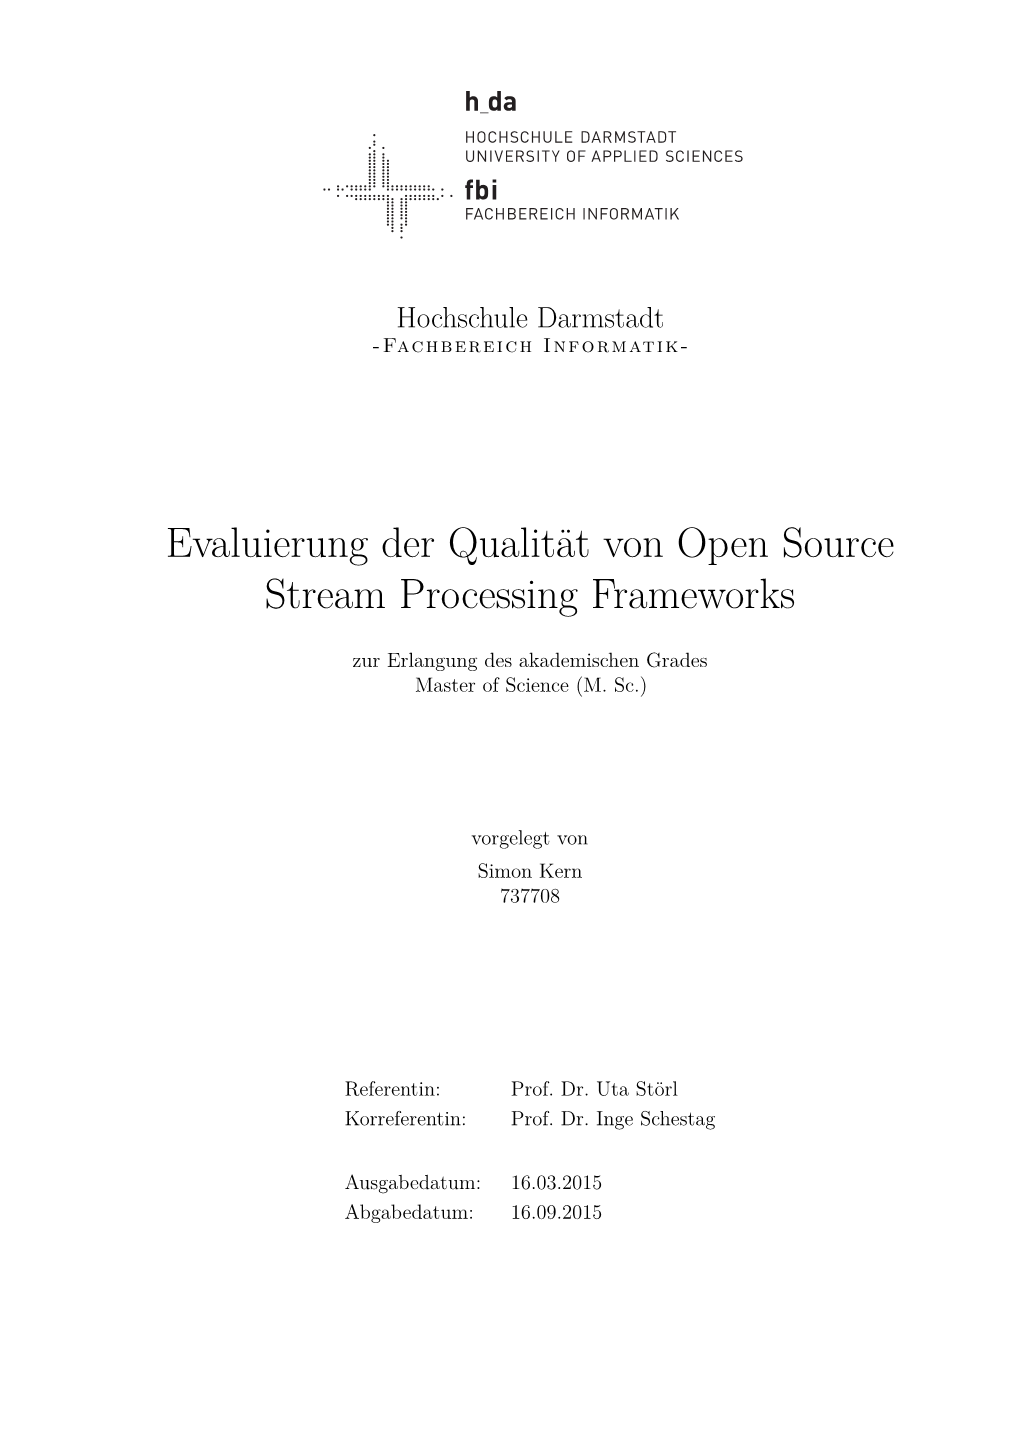 Evaluierung Der Qualität Von Open Source Stream Processing Frameworks